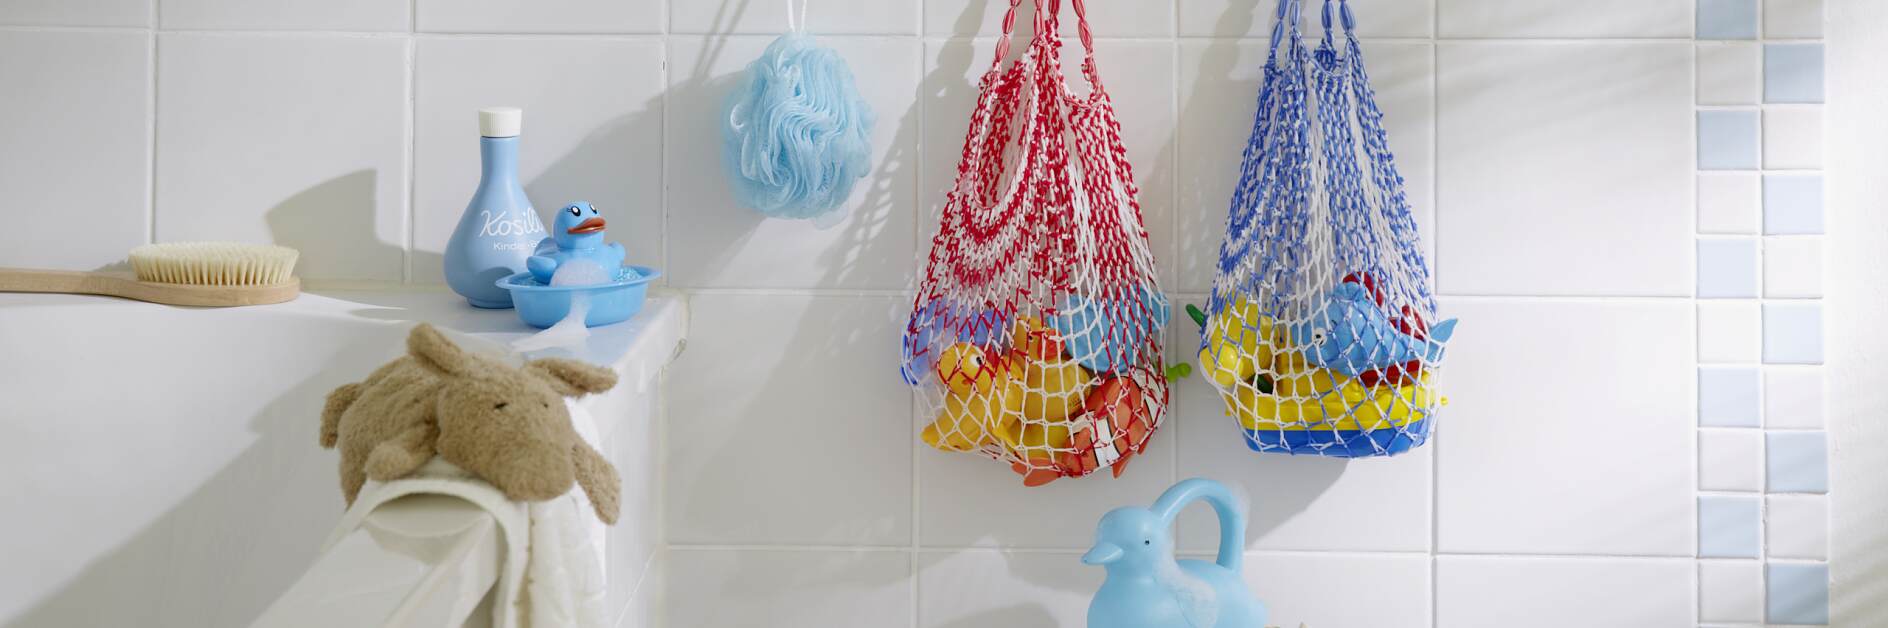 Spielzeugnetze im Bad aufhängen